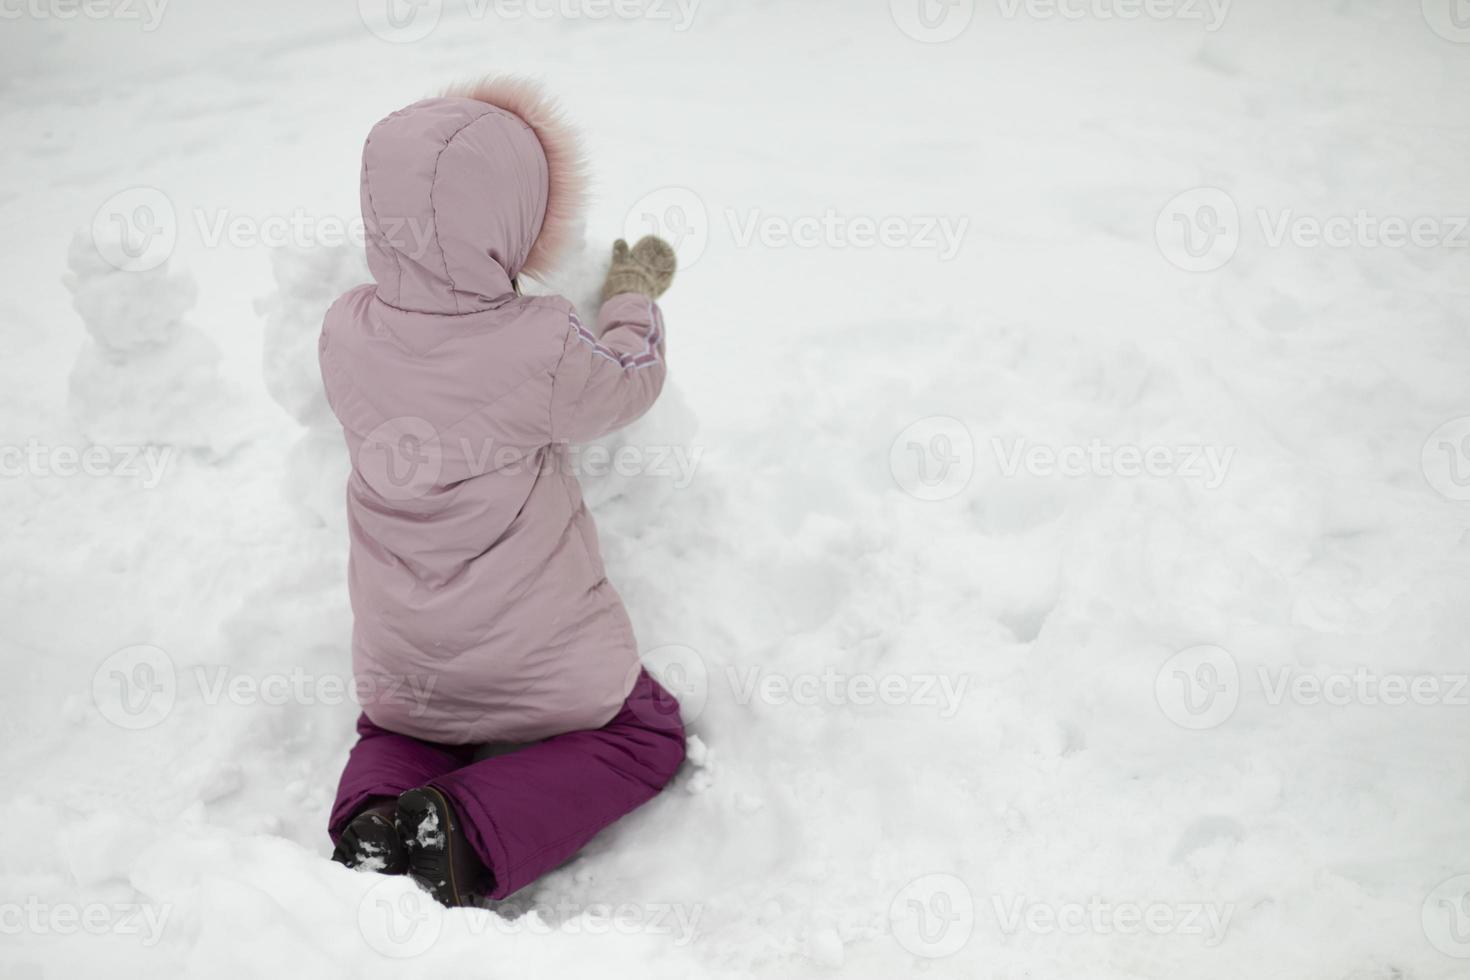 barn leker i snö. flicka på vintern. varma kläder på barnet. foto